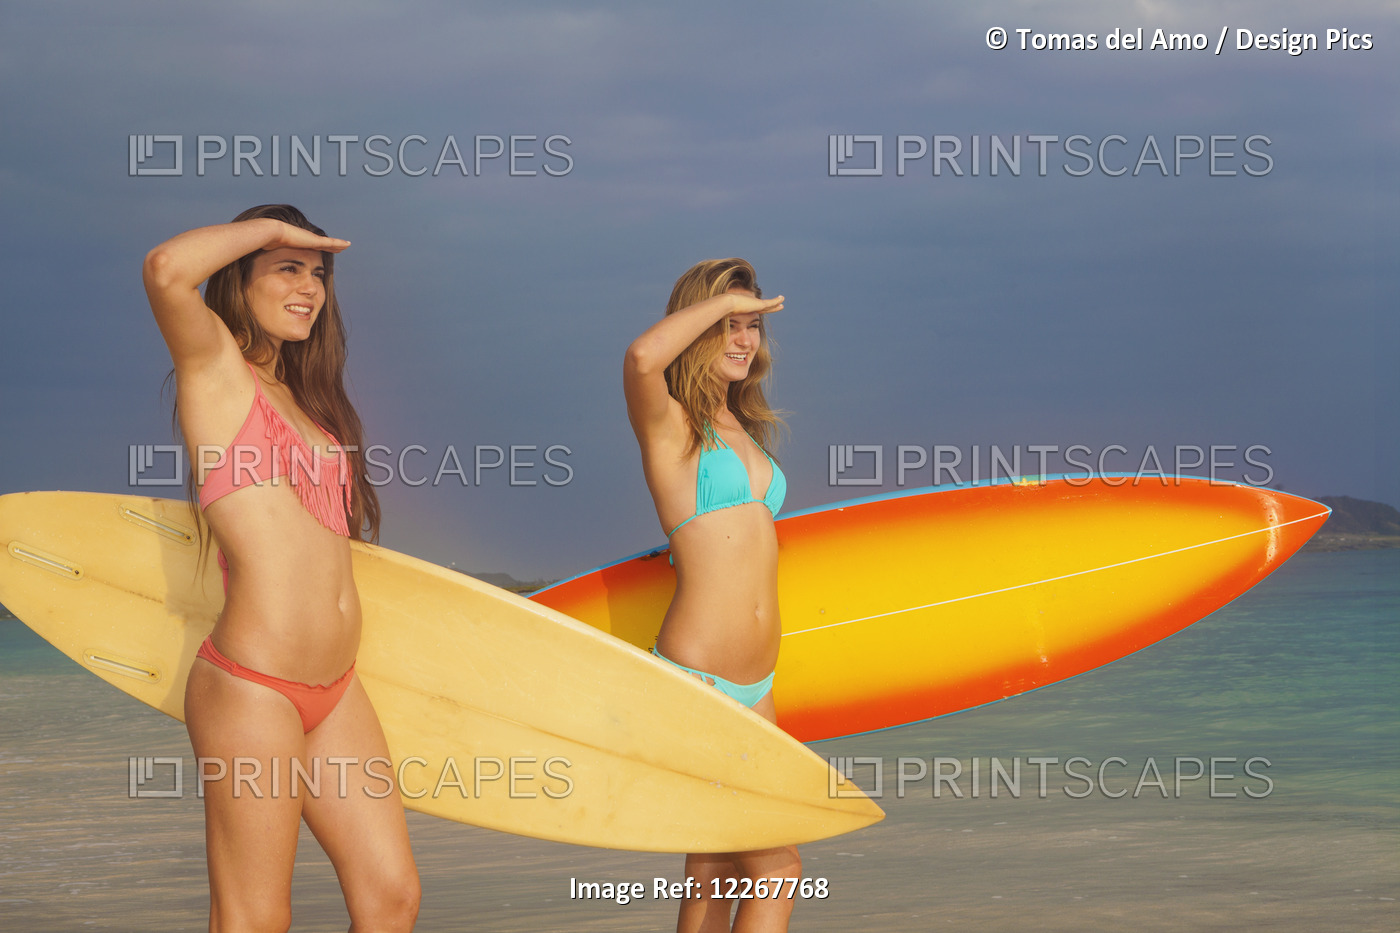 Teenage Sisters With Their Surfboards; Kailua, Island Of Hawaii, Hawaii, United ...